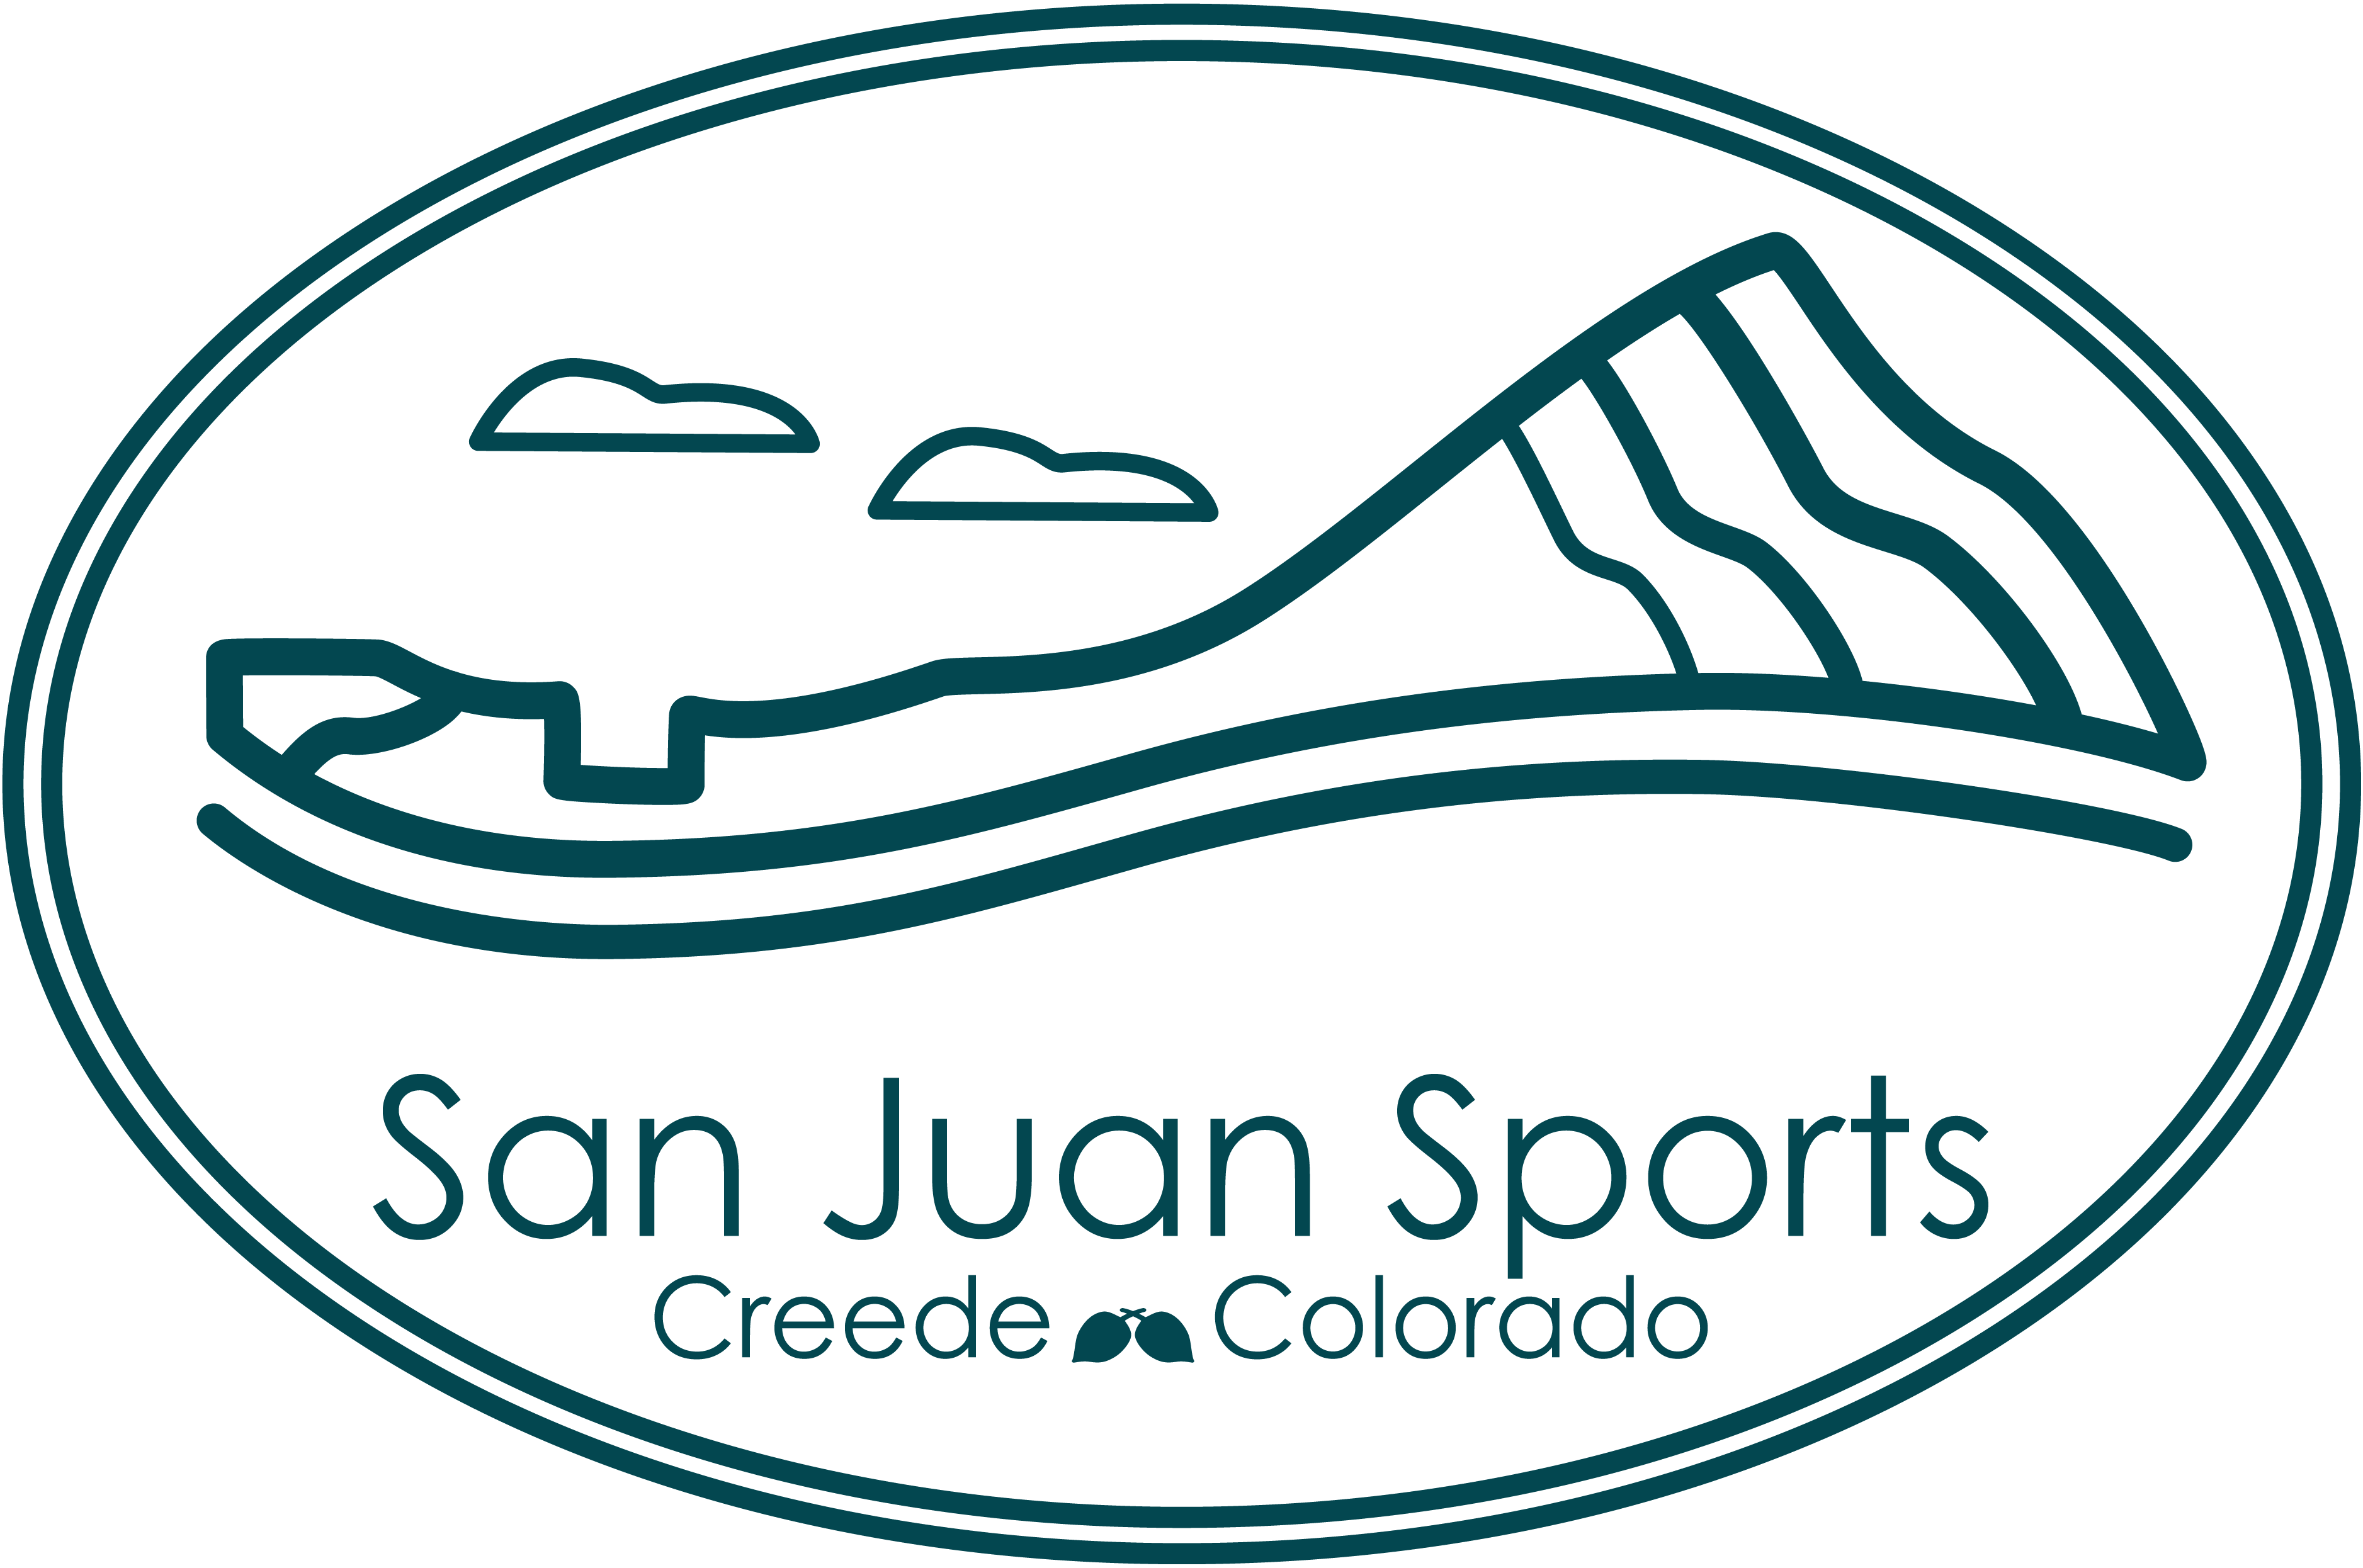 San Juan Sports